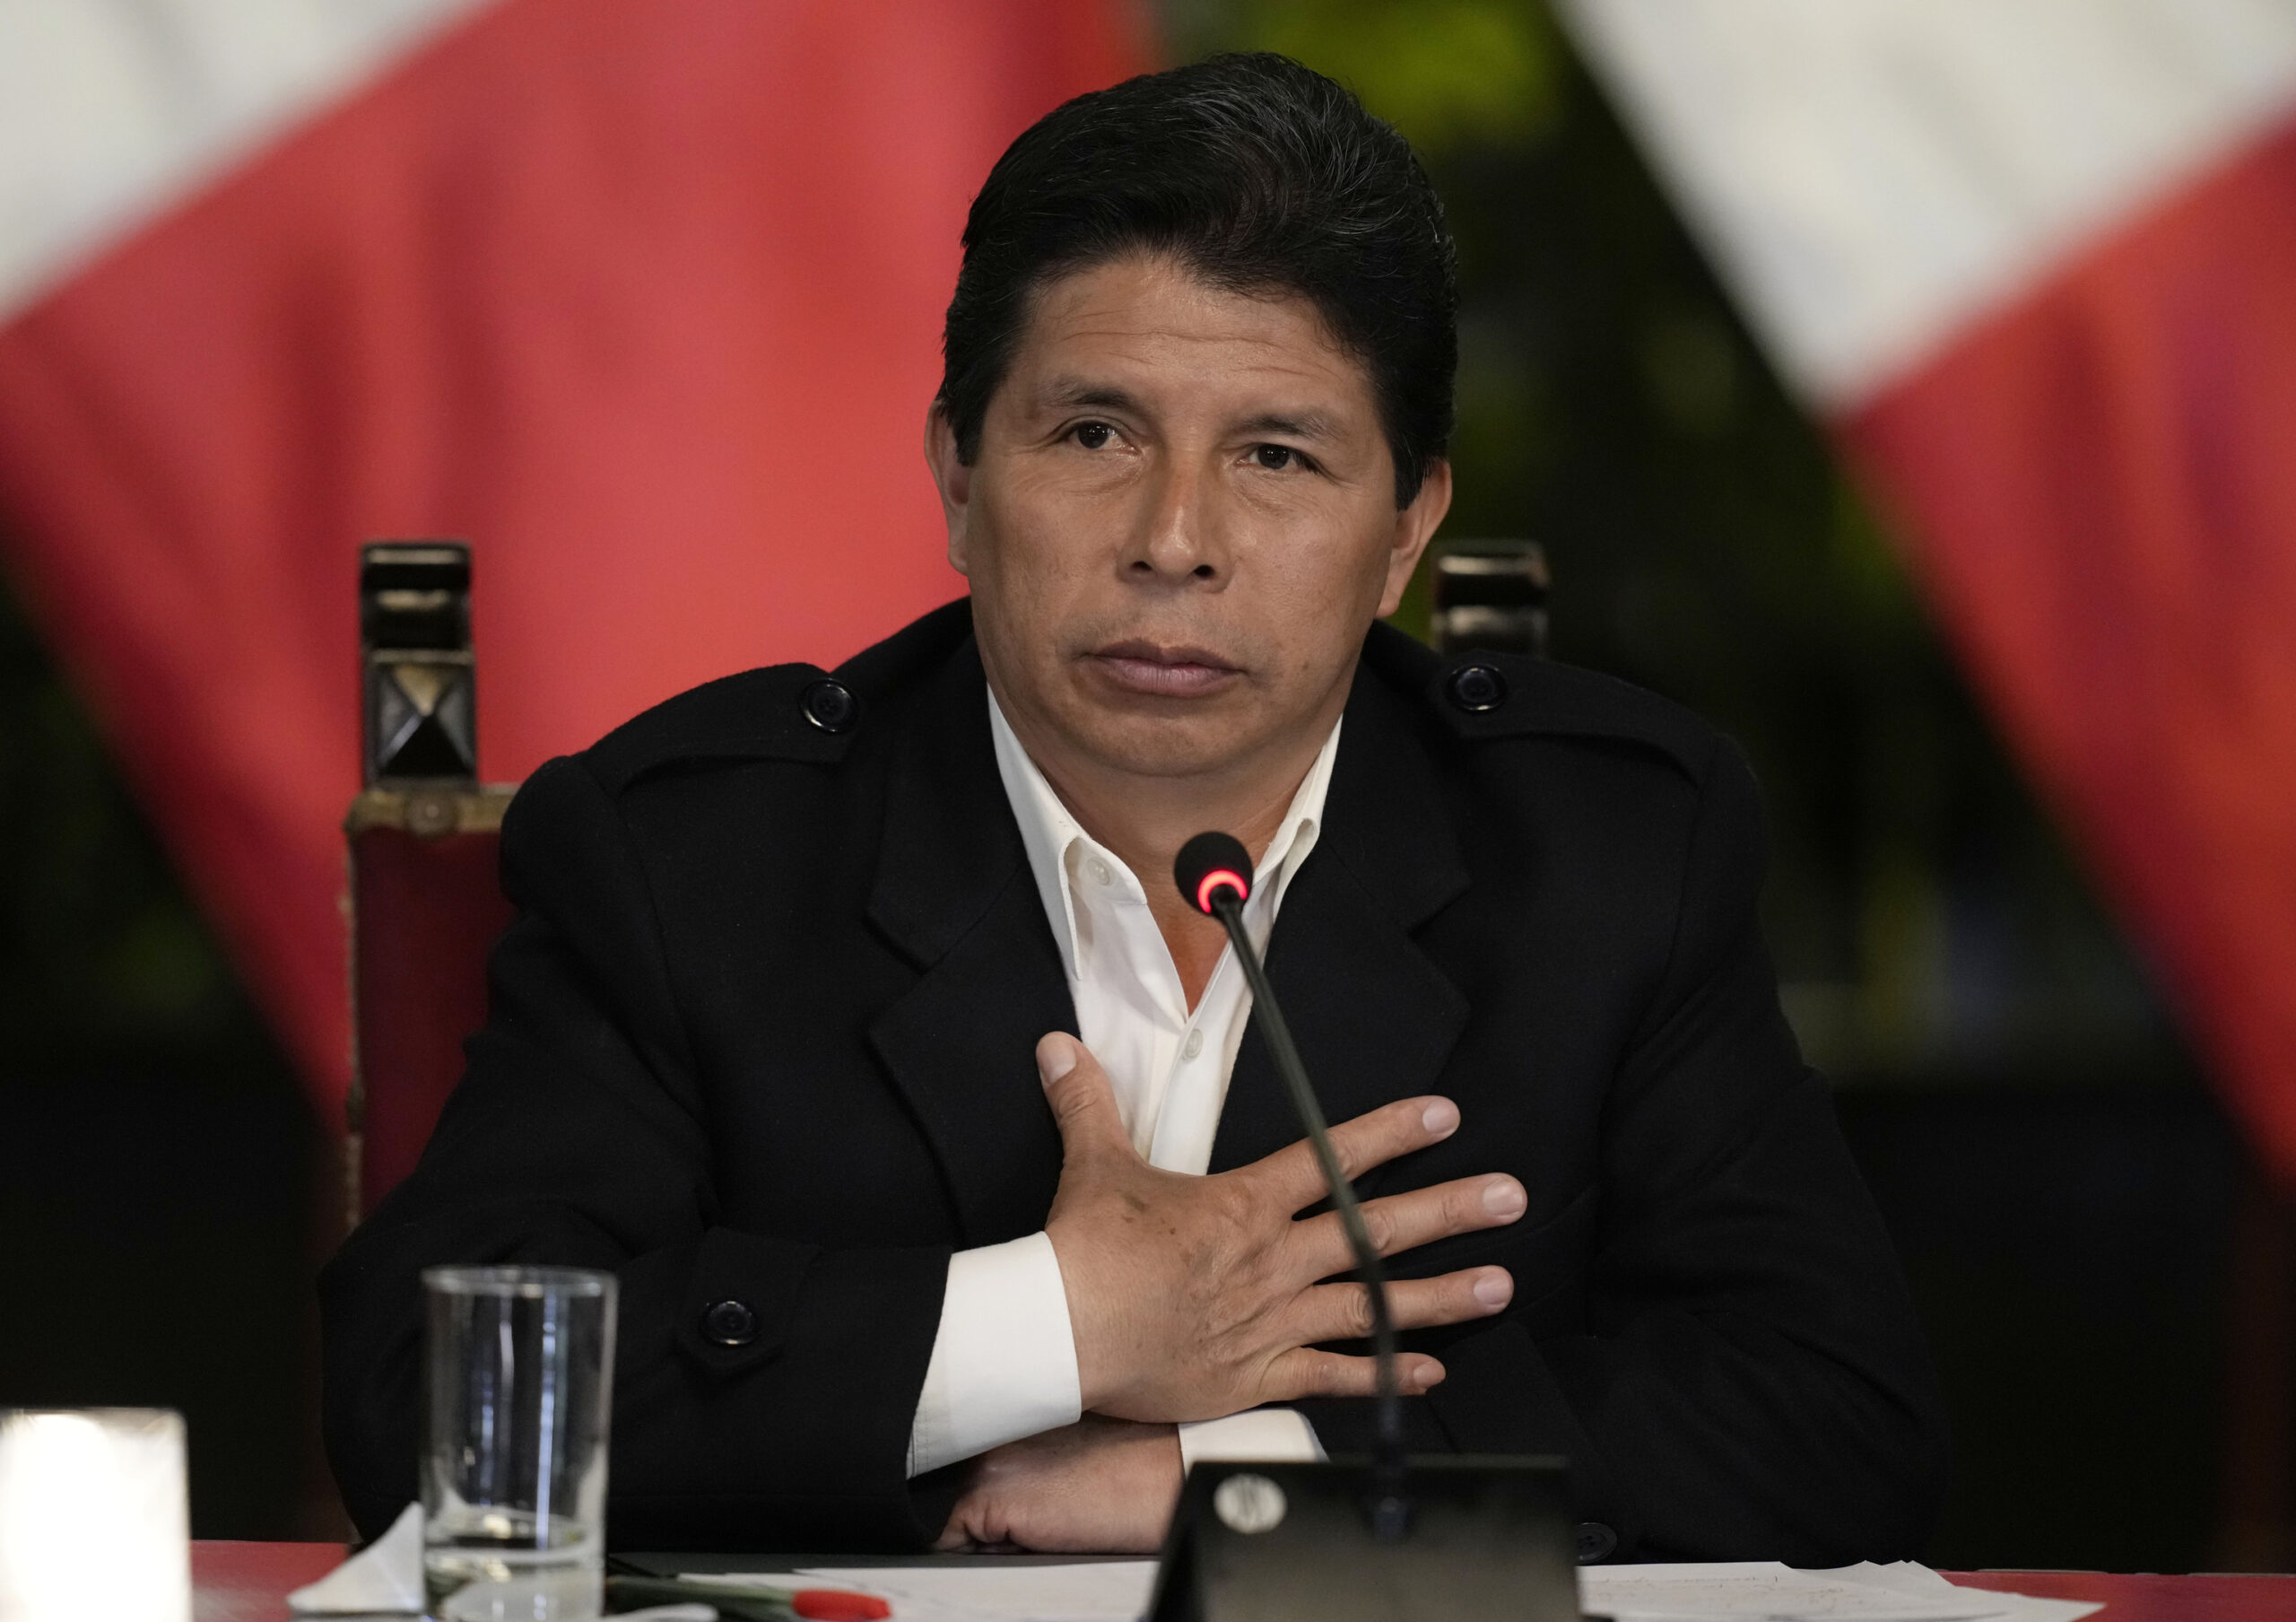 Pedro Castillo: “Jamás renunciaré” a la presidencia de Perú